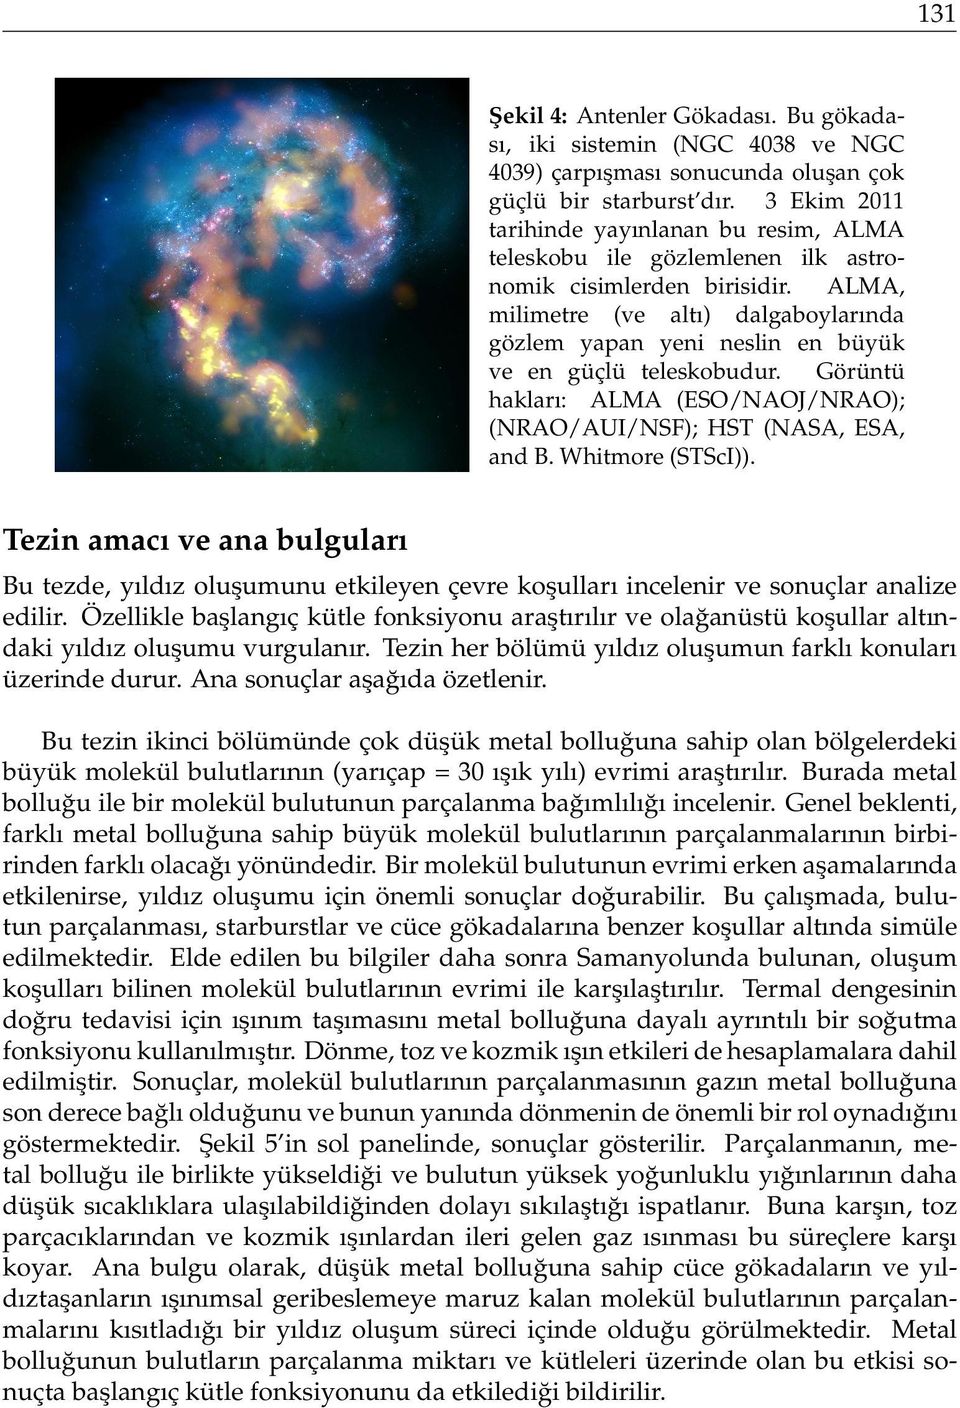 ALMA, milimetre (ve altı) dalgaboylarında gözlem yapan yeni neslin en büyük ve en güçlü teleskobudur. Görüntü hakları: ALMA (ESO/NAOJ/NRAO); (NRAO/AUI/NSF); HST (NASA, ESA, and B. Whitmore (STScI)).